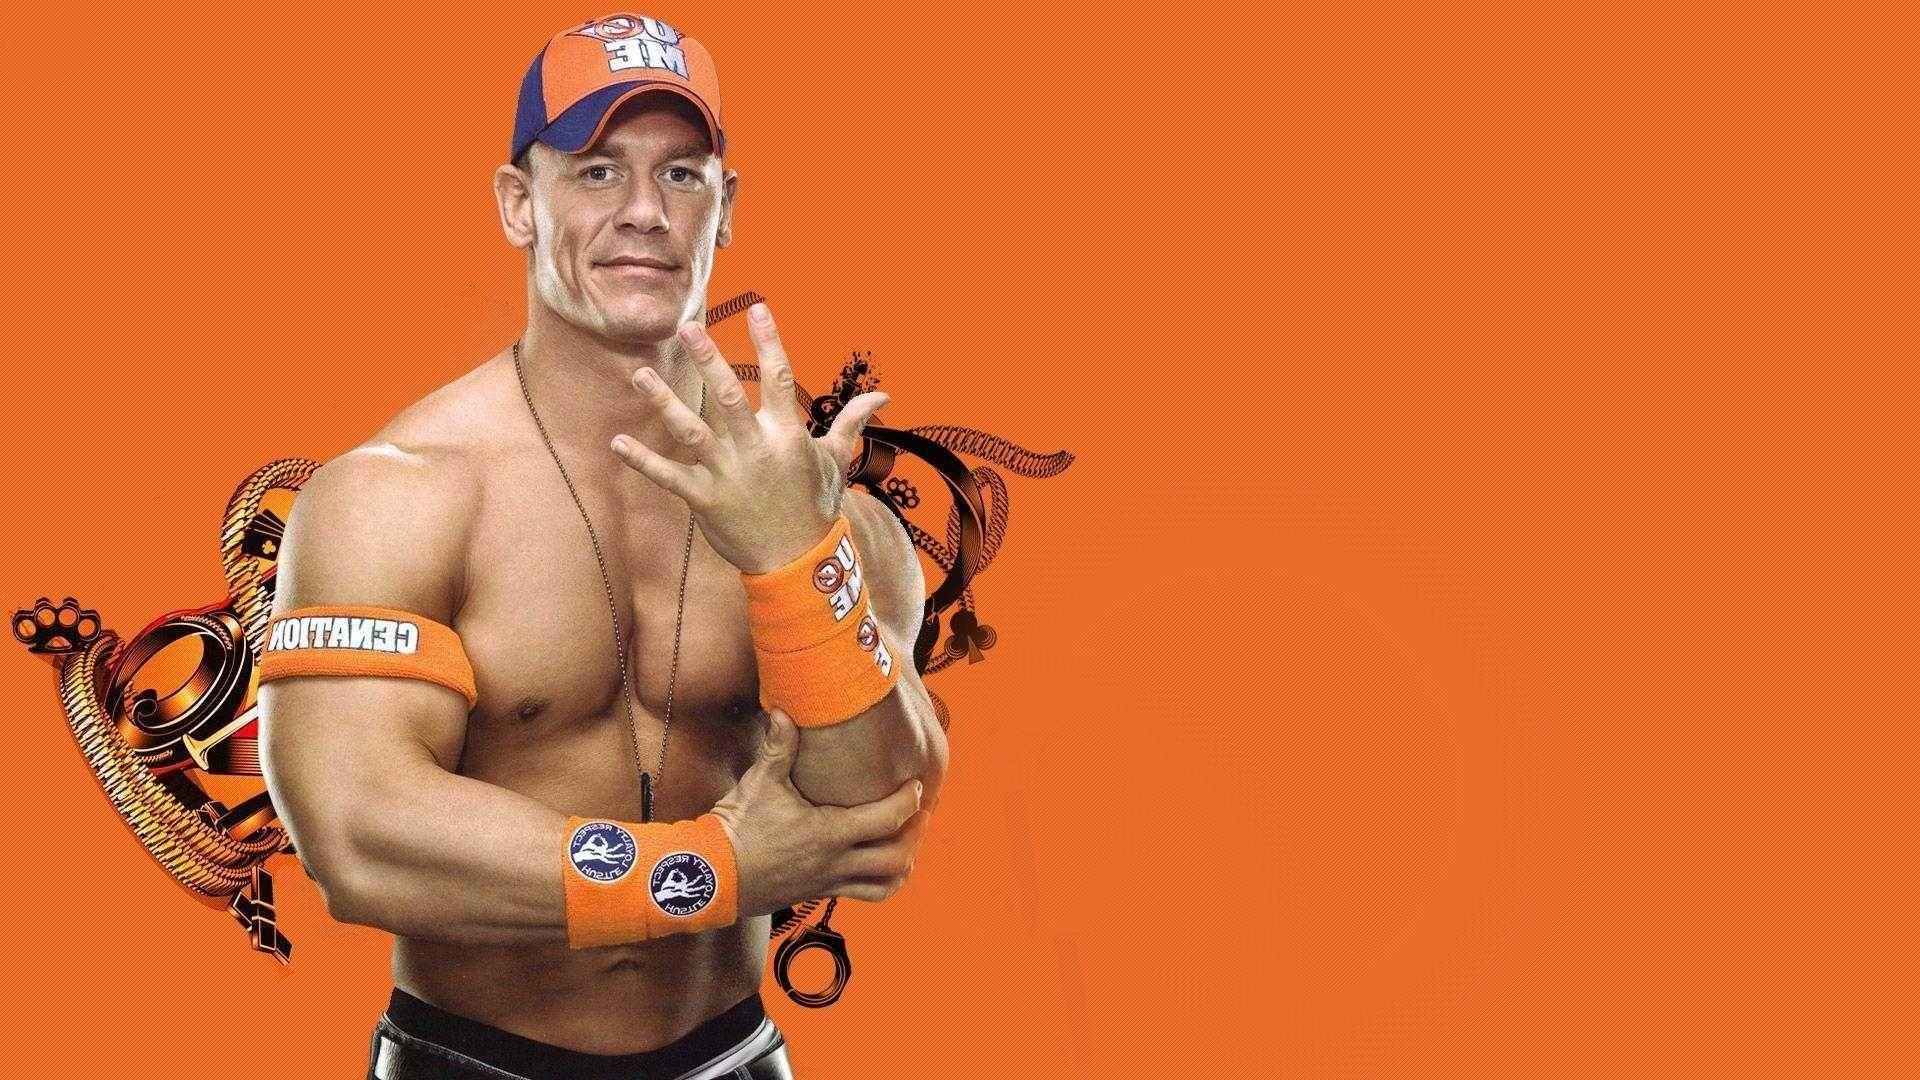 John Cena Full HD Image In 2018 Pics Of Mobile Phones Wwe Wallpaper